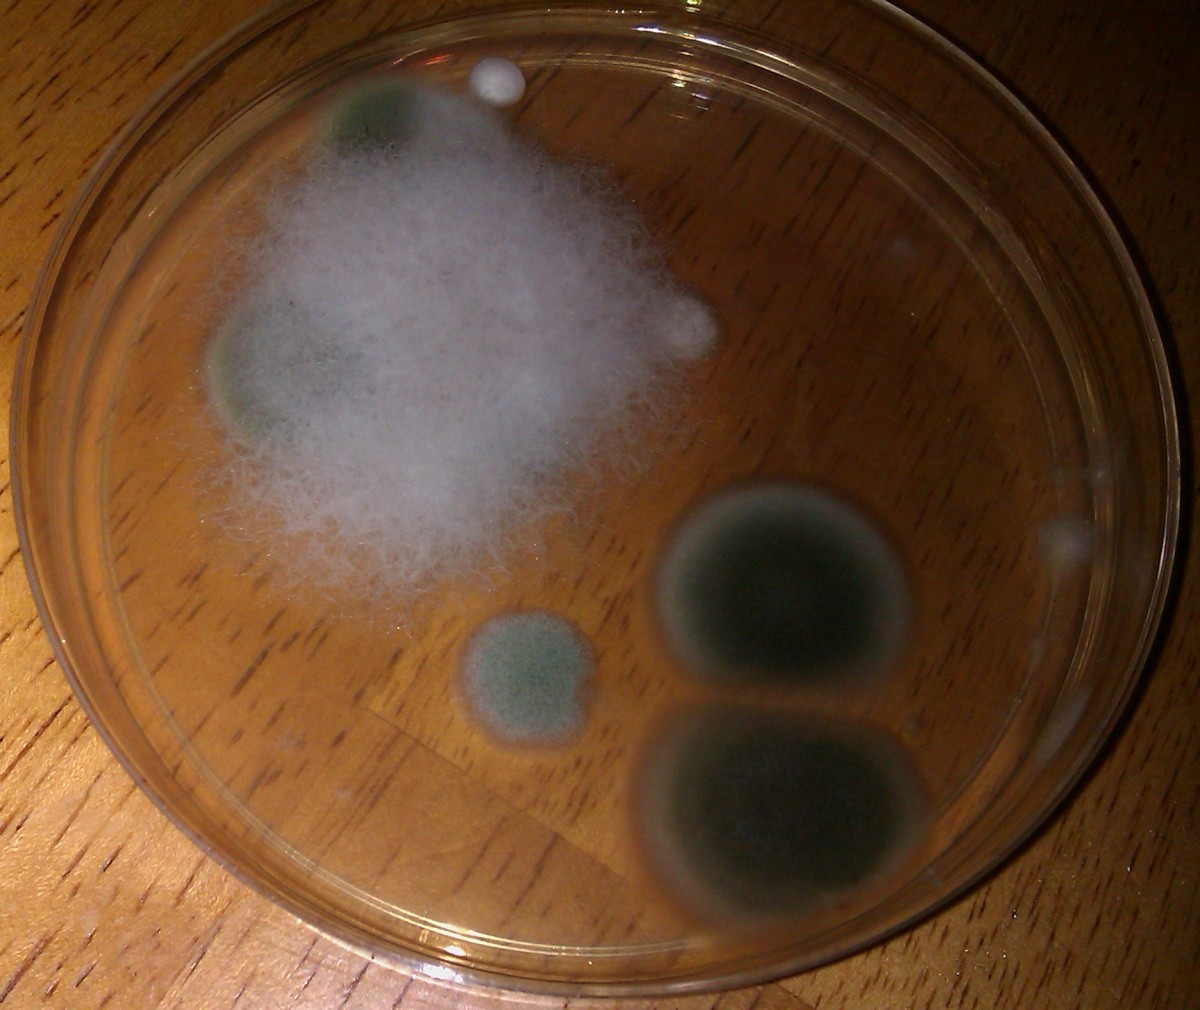 Black mold in a test kit petri dish